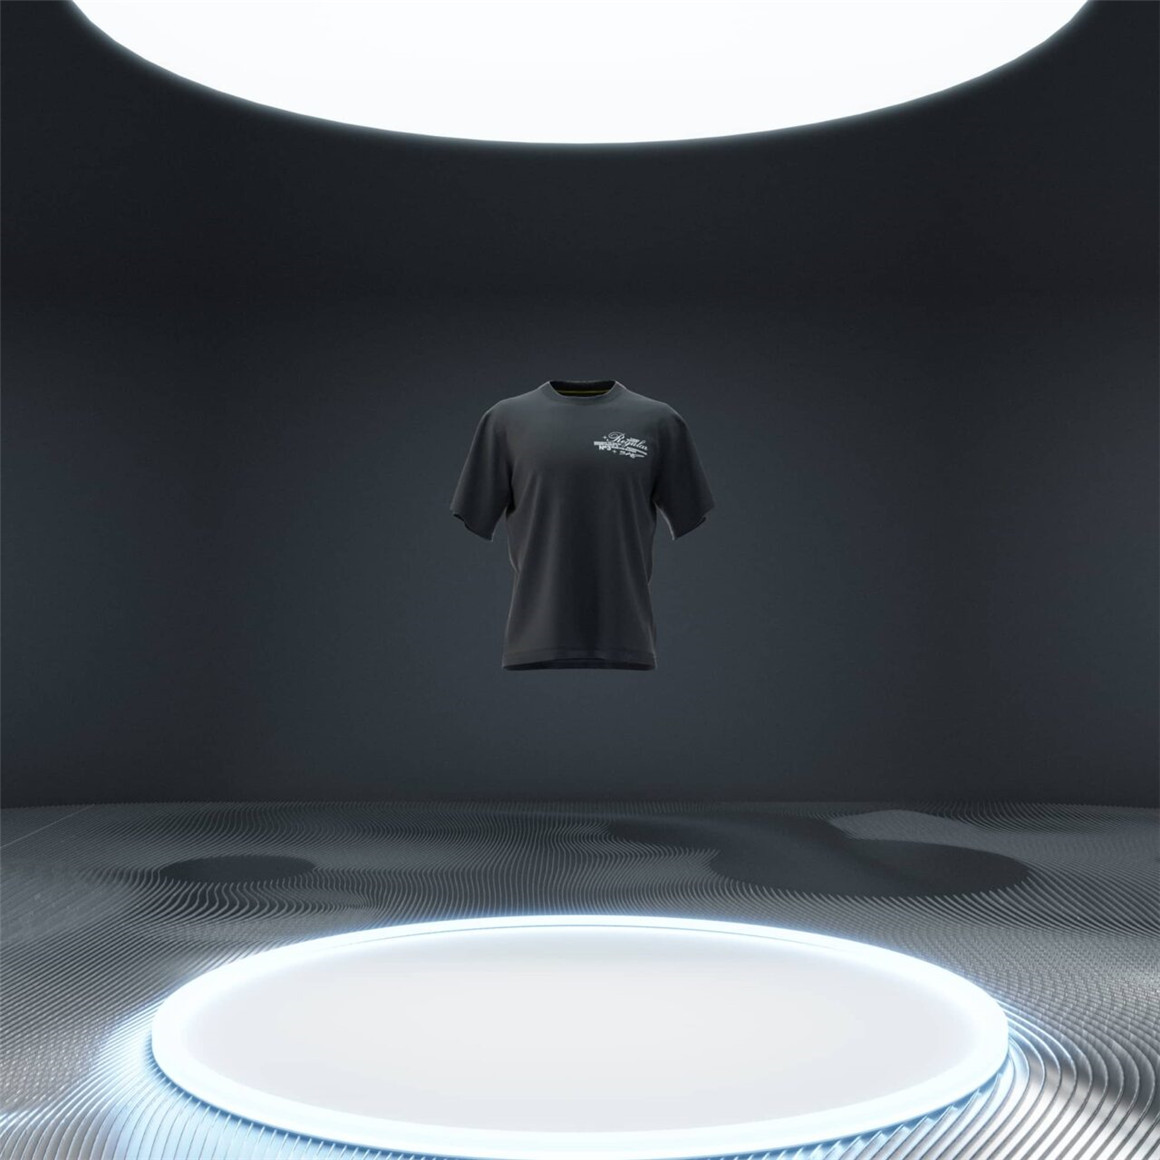 Blender模型：新潮概念视觉3DT恤服装场景街头服饰品牌宣传模型 设计素材 第2张